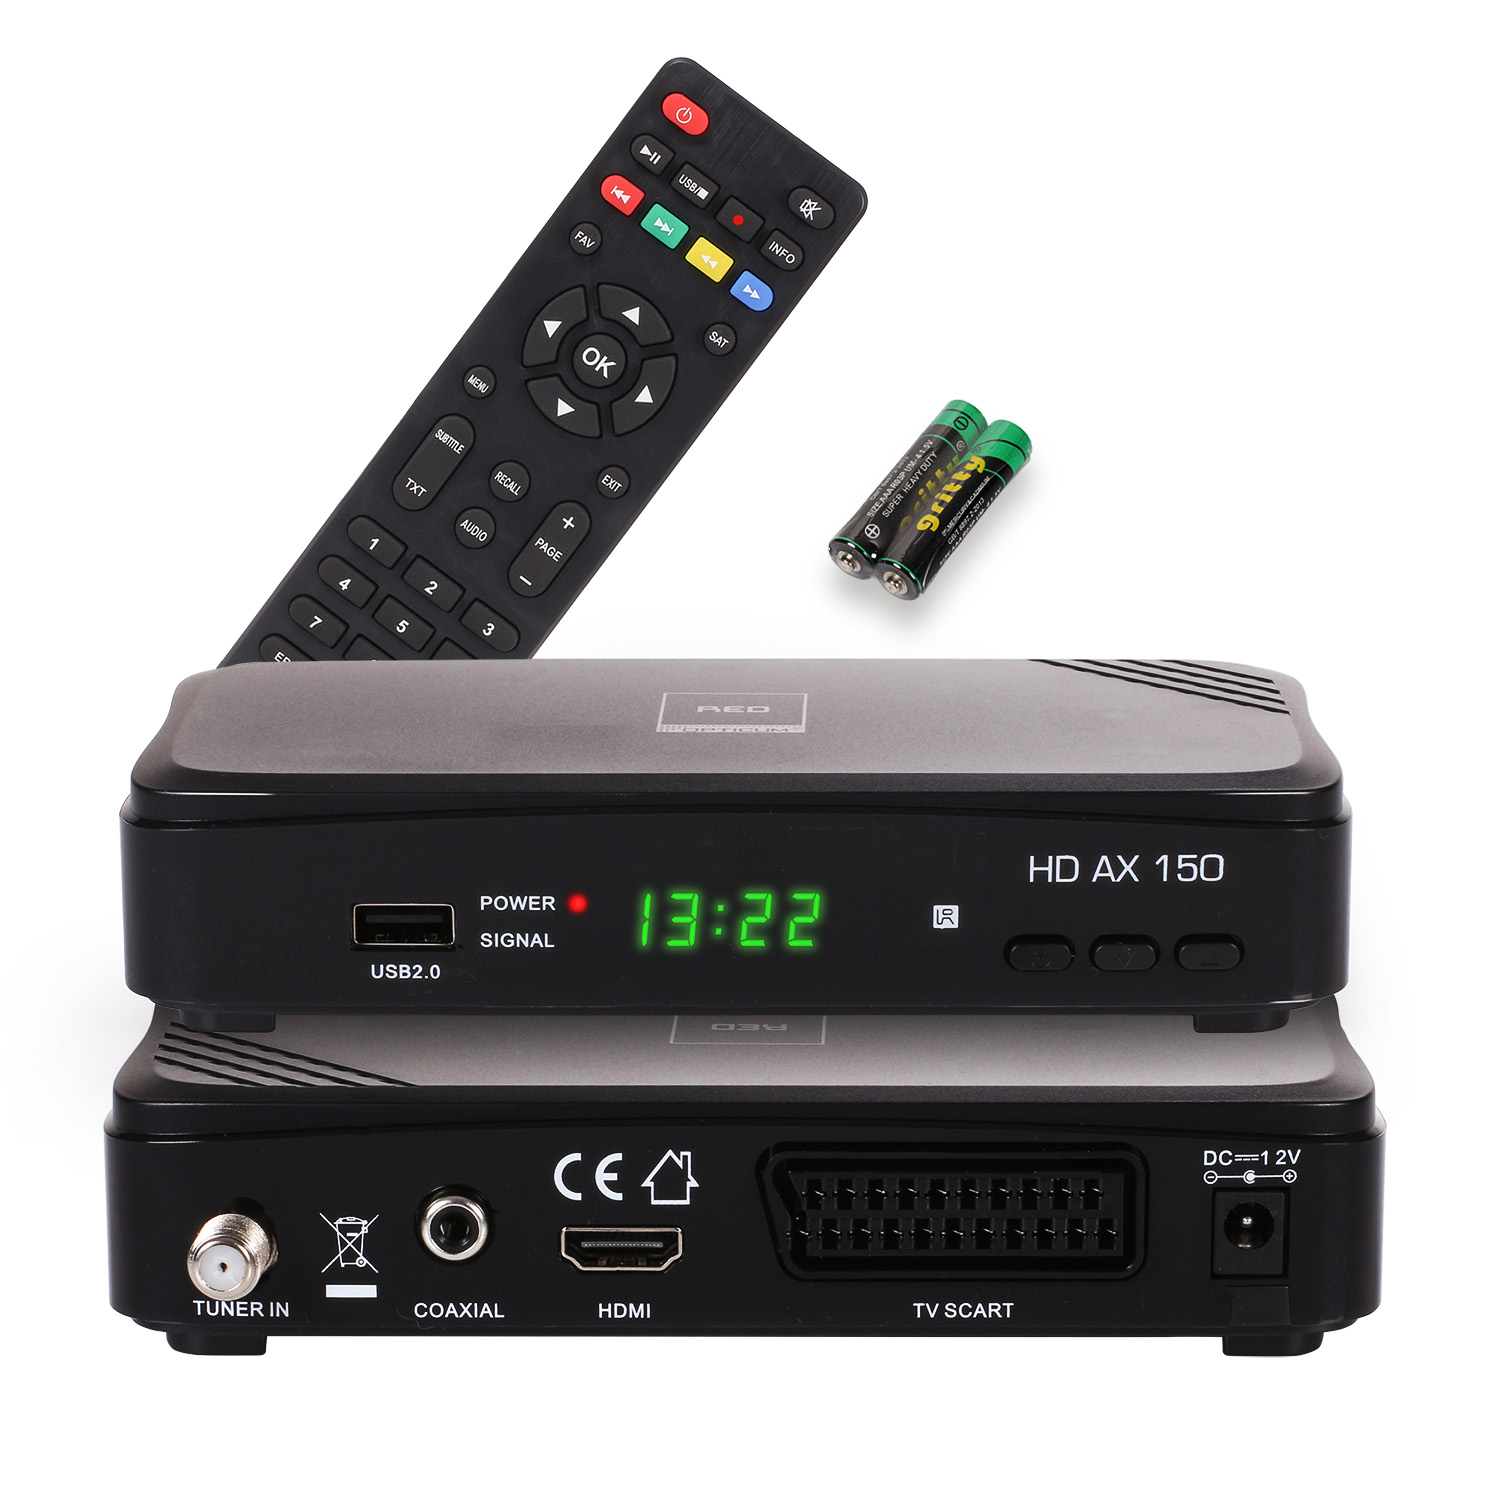 RED OPTICUM Sat-Receiver (HDTV, PVR-Funktion, PVR schwarz) AX 150 mit DVB-S2, Opticum DVB-S